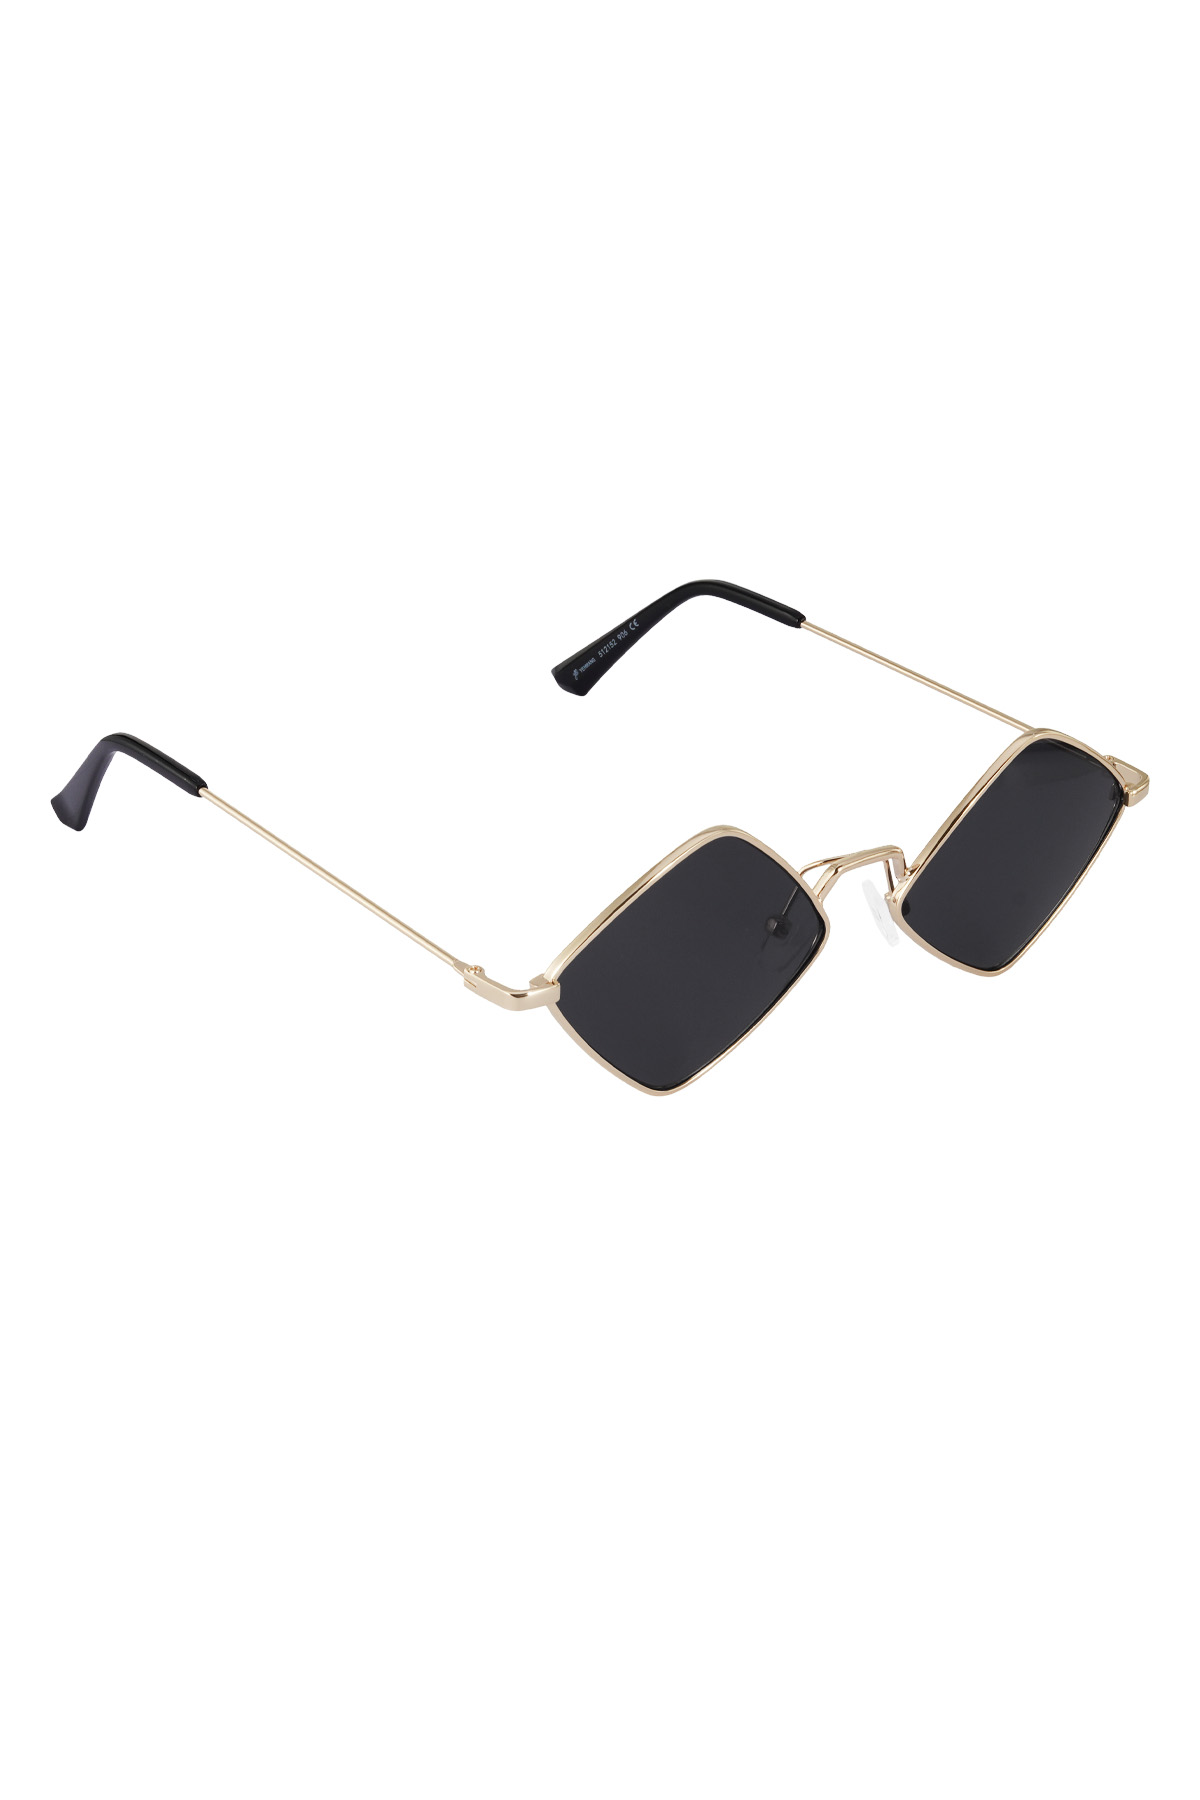 Sonnenbrille Brilliance - Graugold h5 